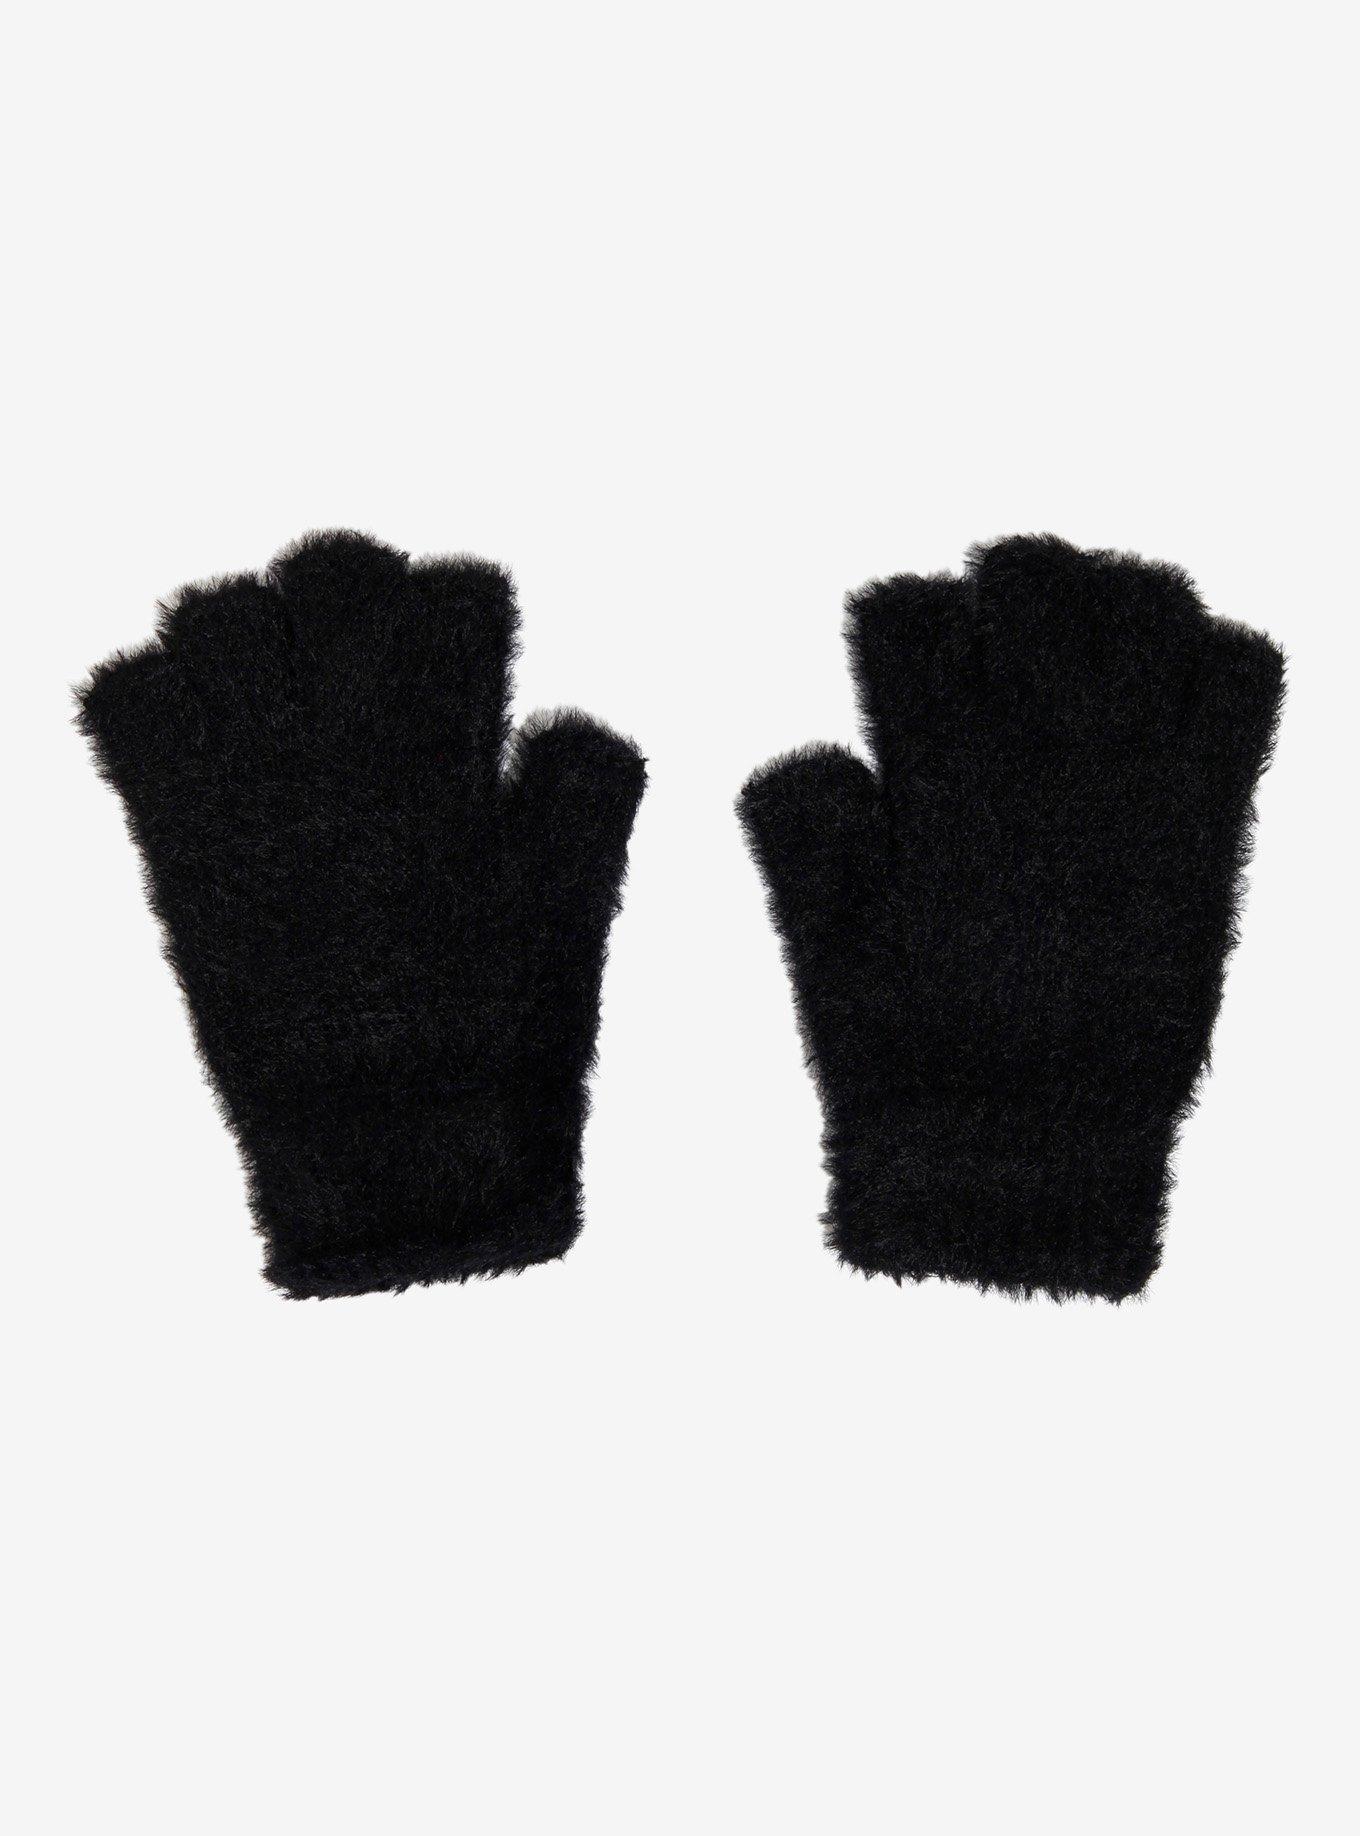 Black Fuzzy Fingerless Gloves | Hot Topic